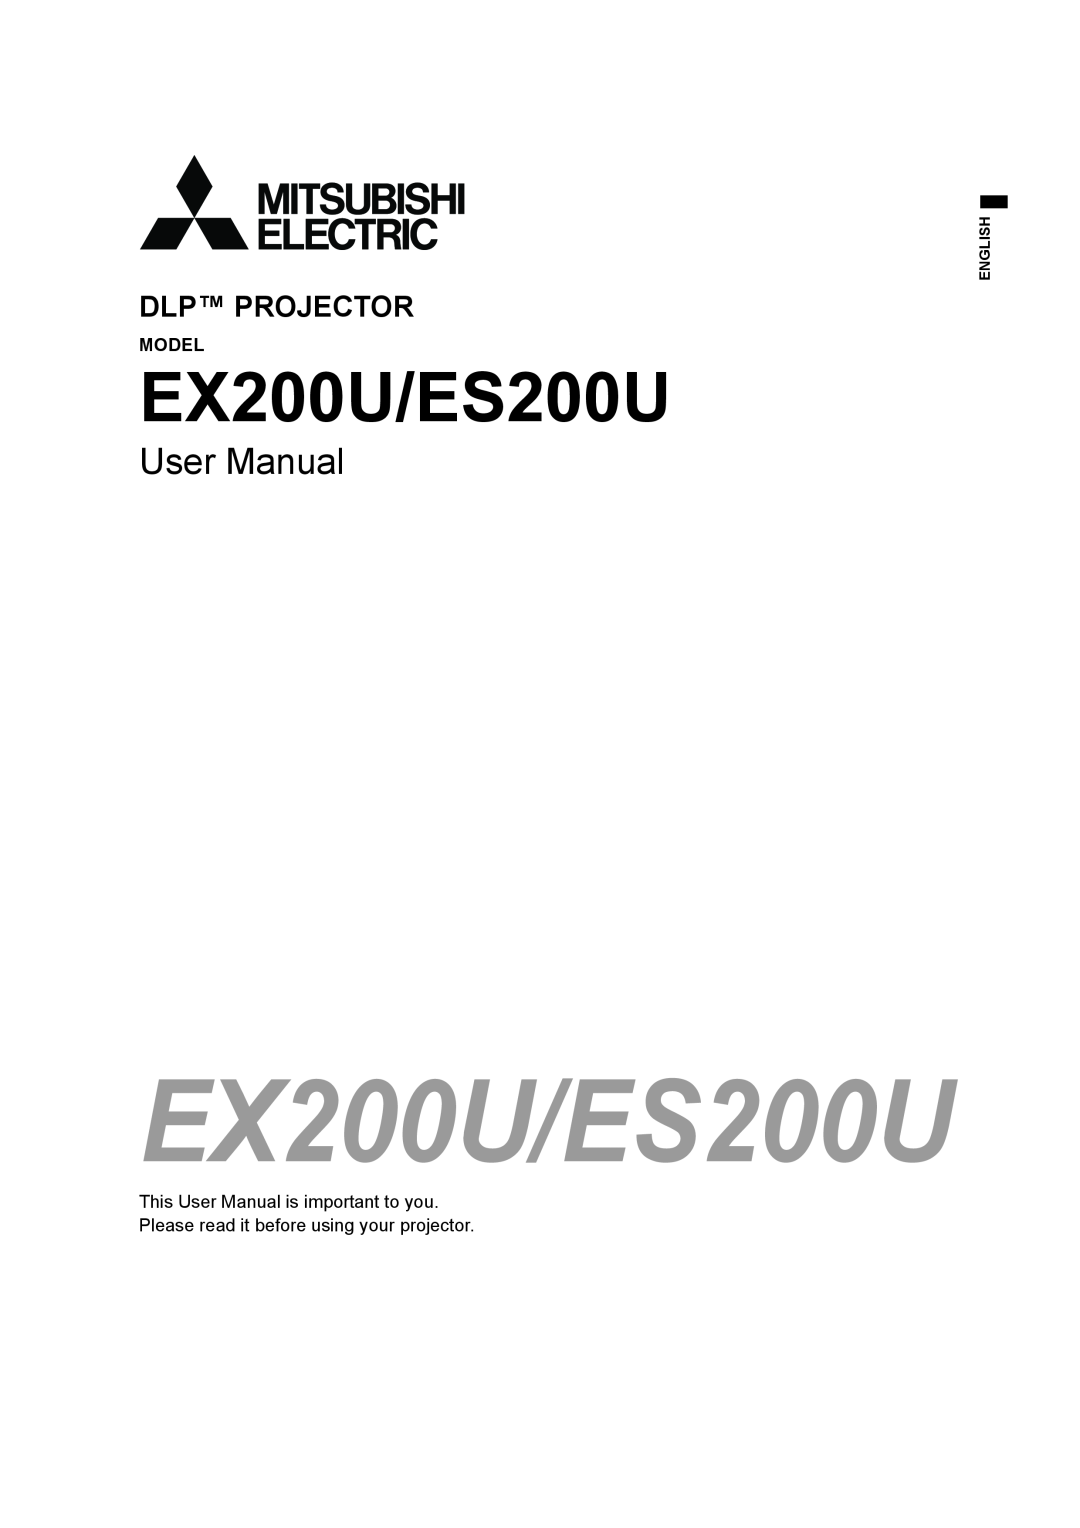 Mitsubishi Electronics user manual Model, EX200U/ES200U, User Manual, Dlp Projector 